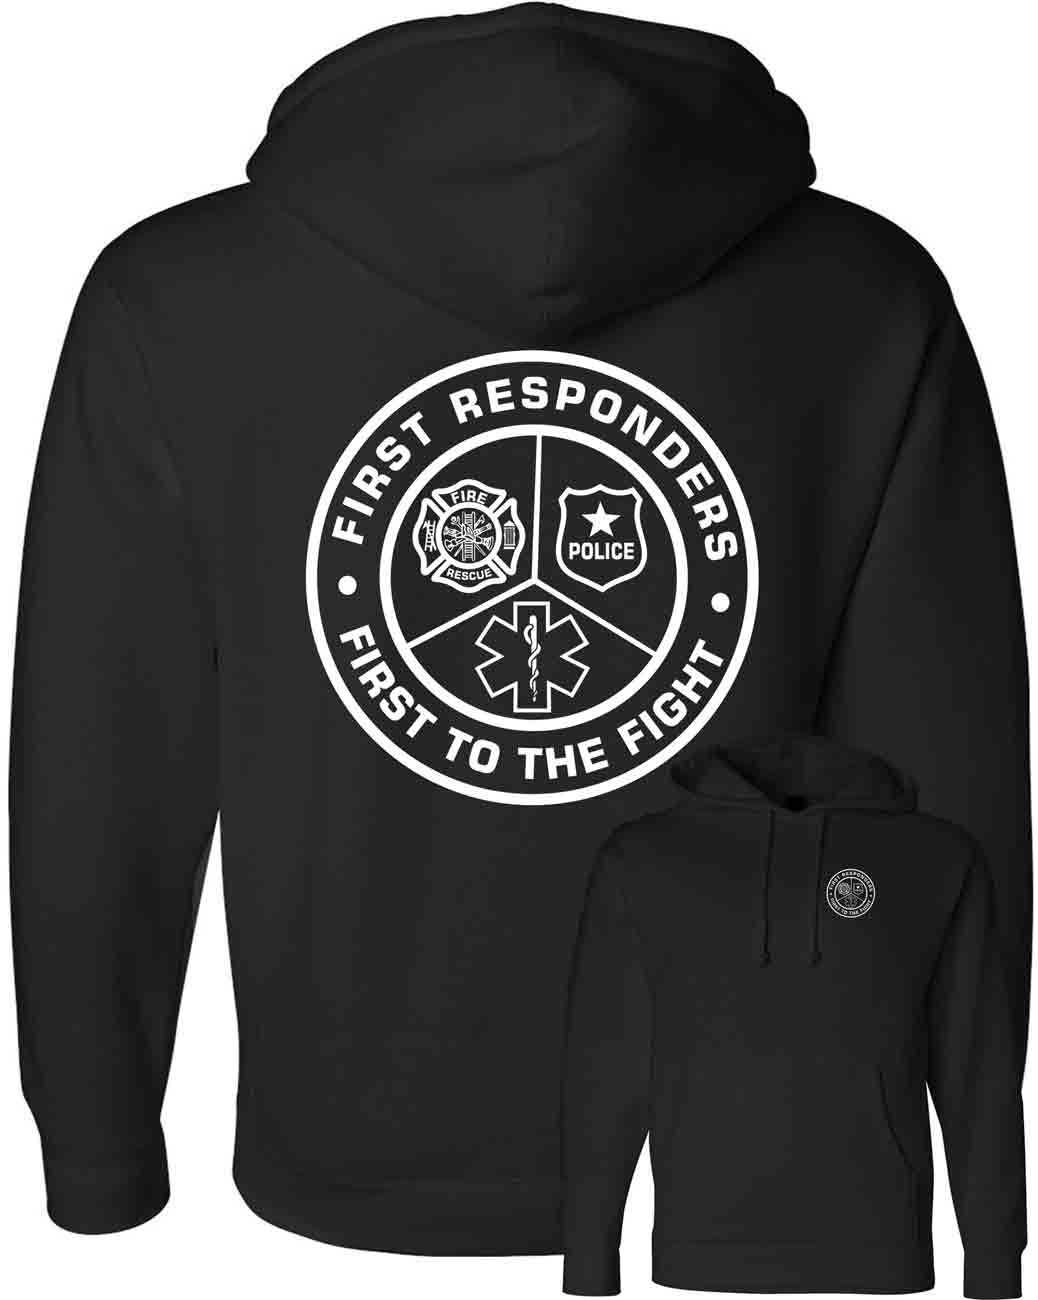 firstresponderscircle-hoodie-black-independent.jpg